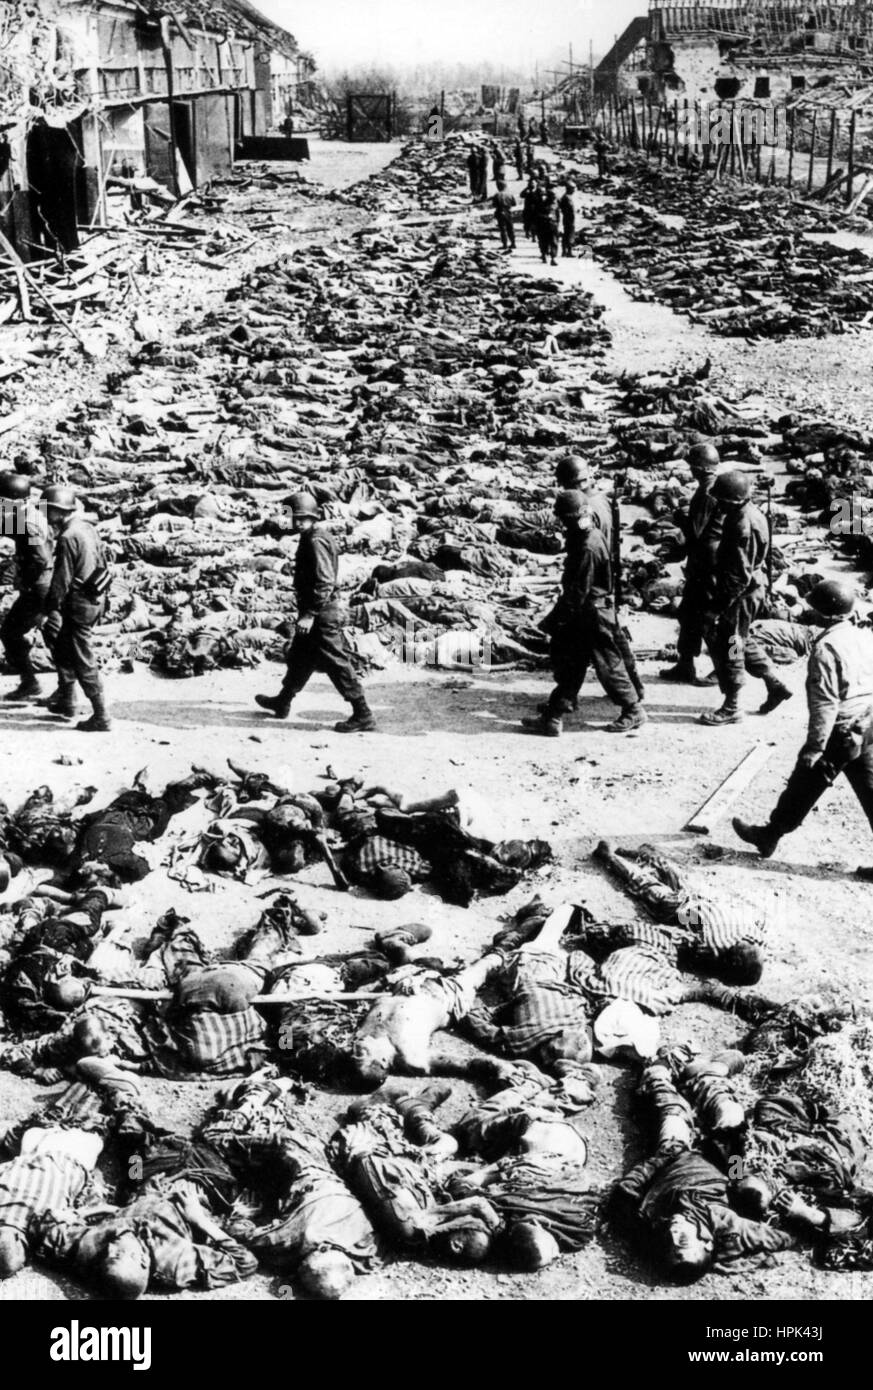 CAMPO DI CONCENTRAMENTO DI AUSCHWITZ. Soldati americani che passavano file di cadaveri dopo la liberazione del campo il 27 gennaio 1945 Foto Stock